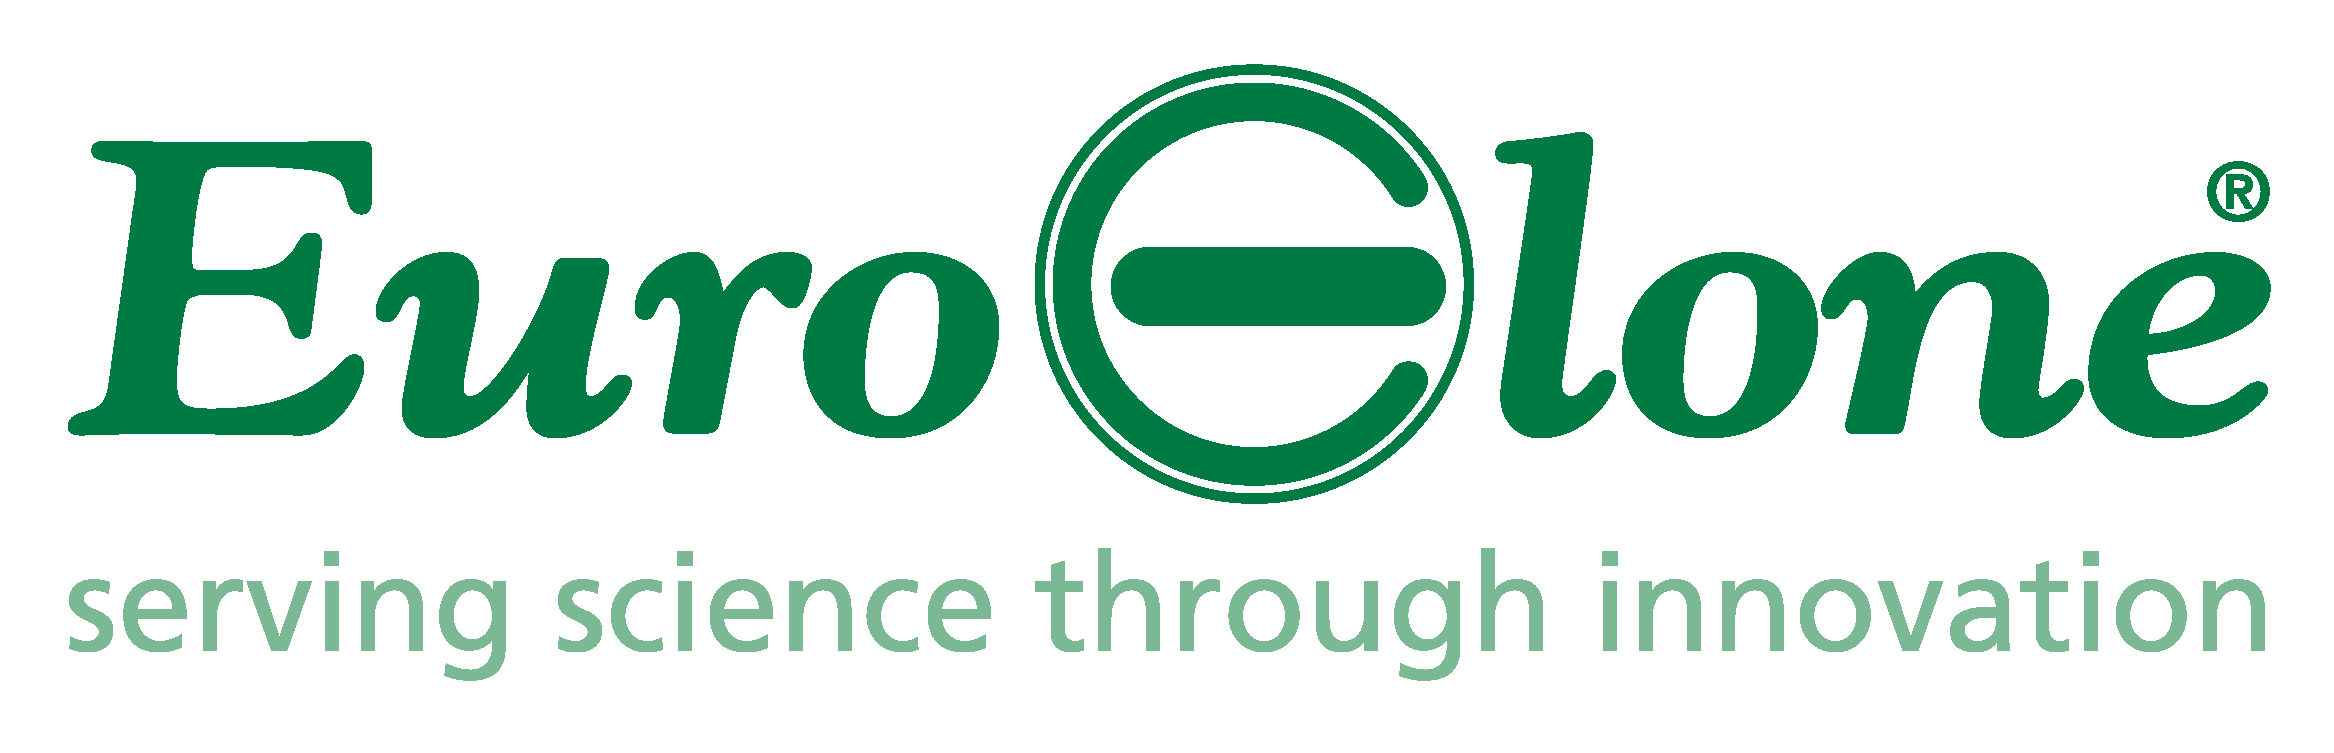 EUROCLONE logo exi